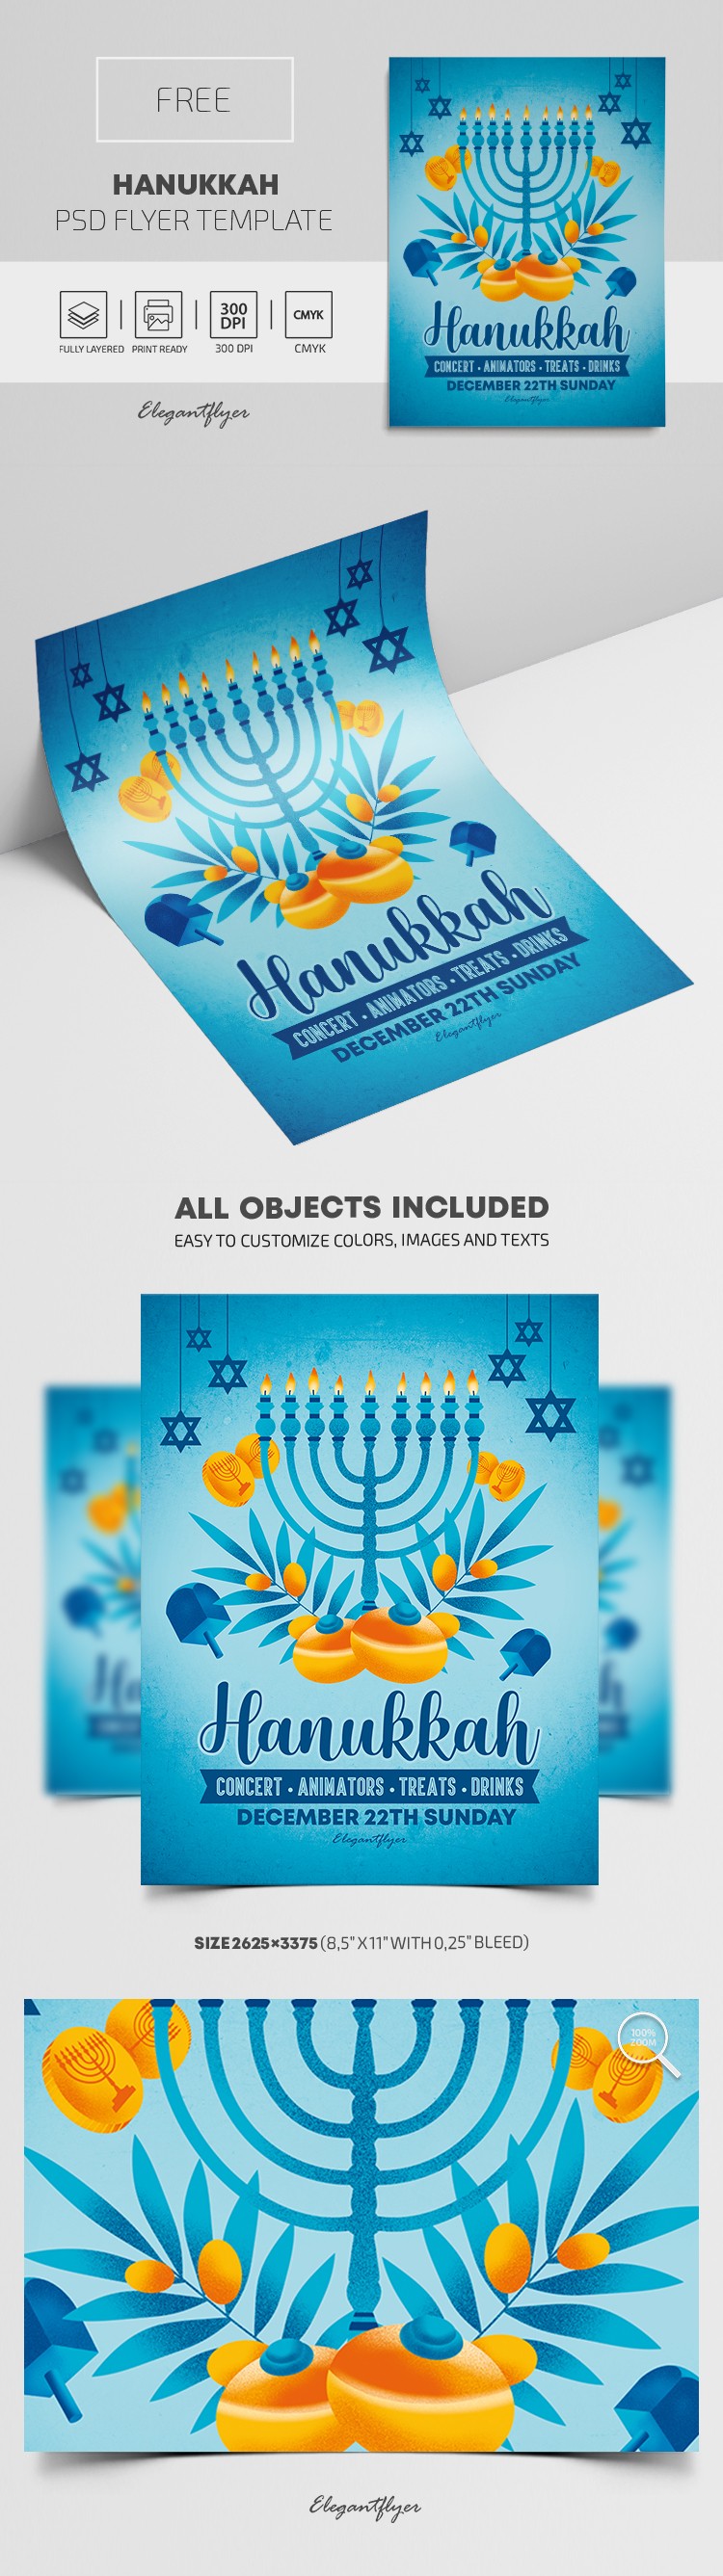 Hanukkah-Flugblatt by ElegantFlyer